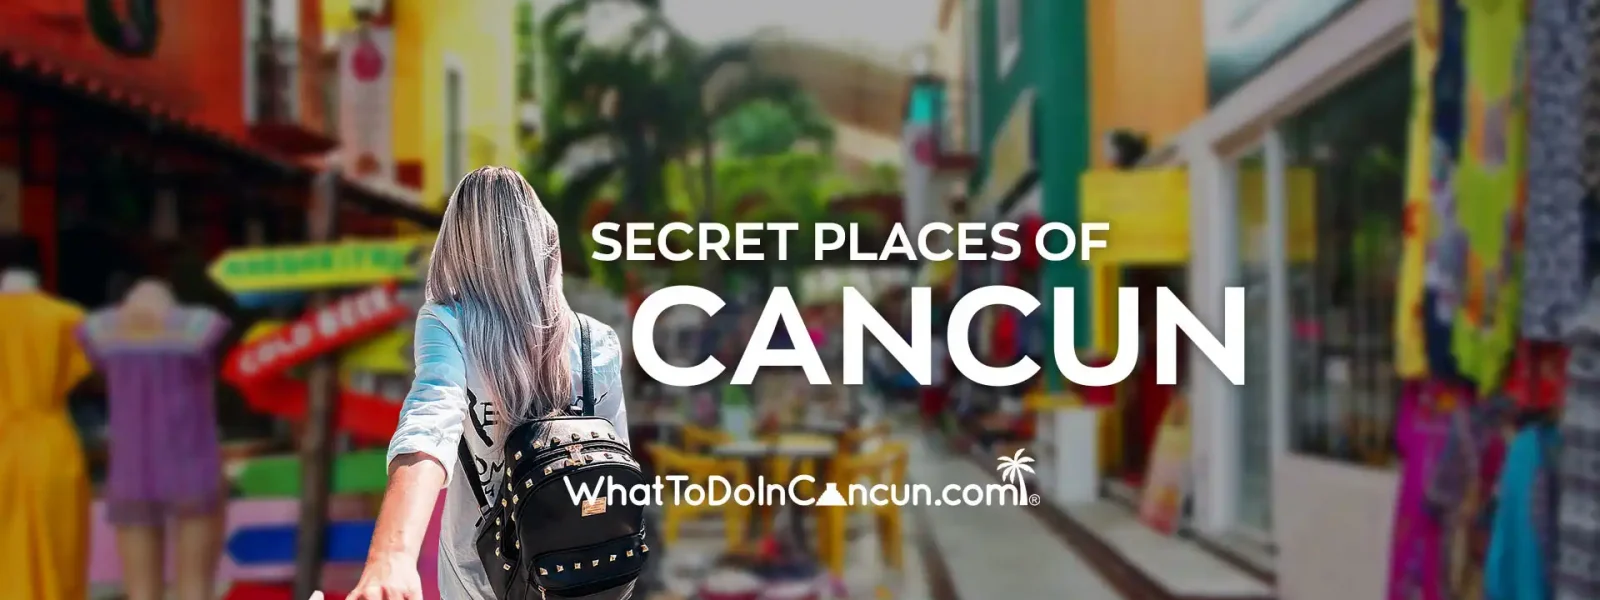 secret places of cancun